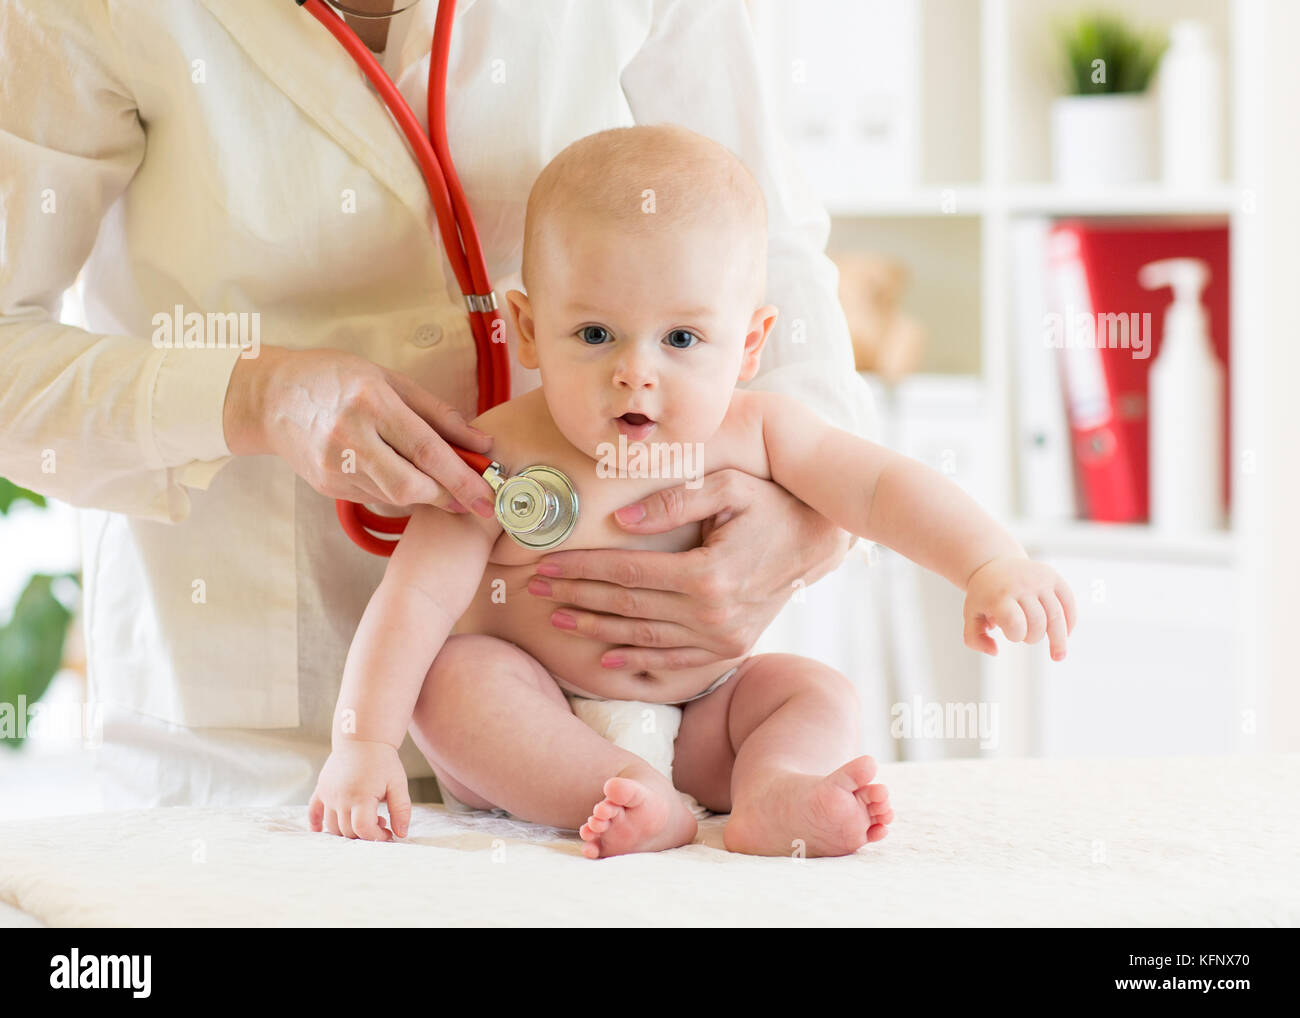 Medico esame pediatrico piccolo bimbo in clinica. baby concetto di salute Foto Stock